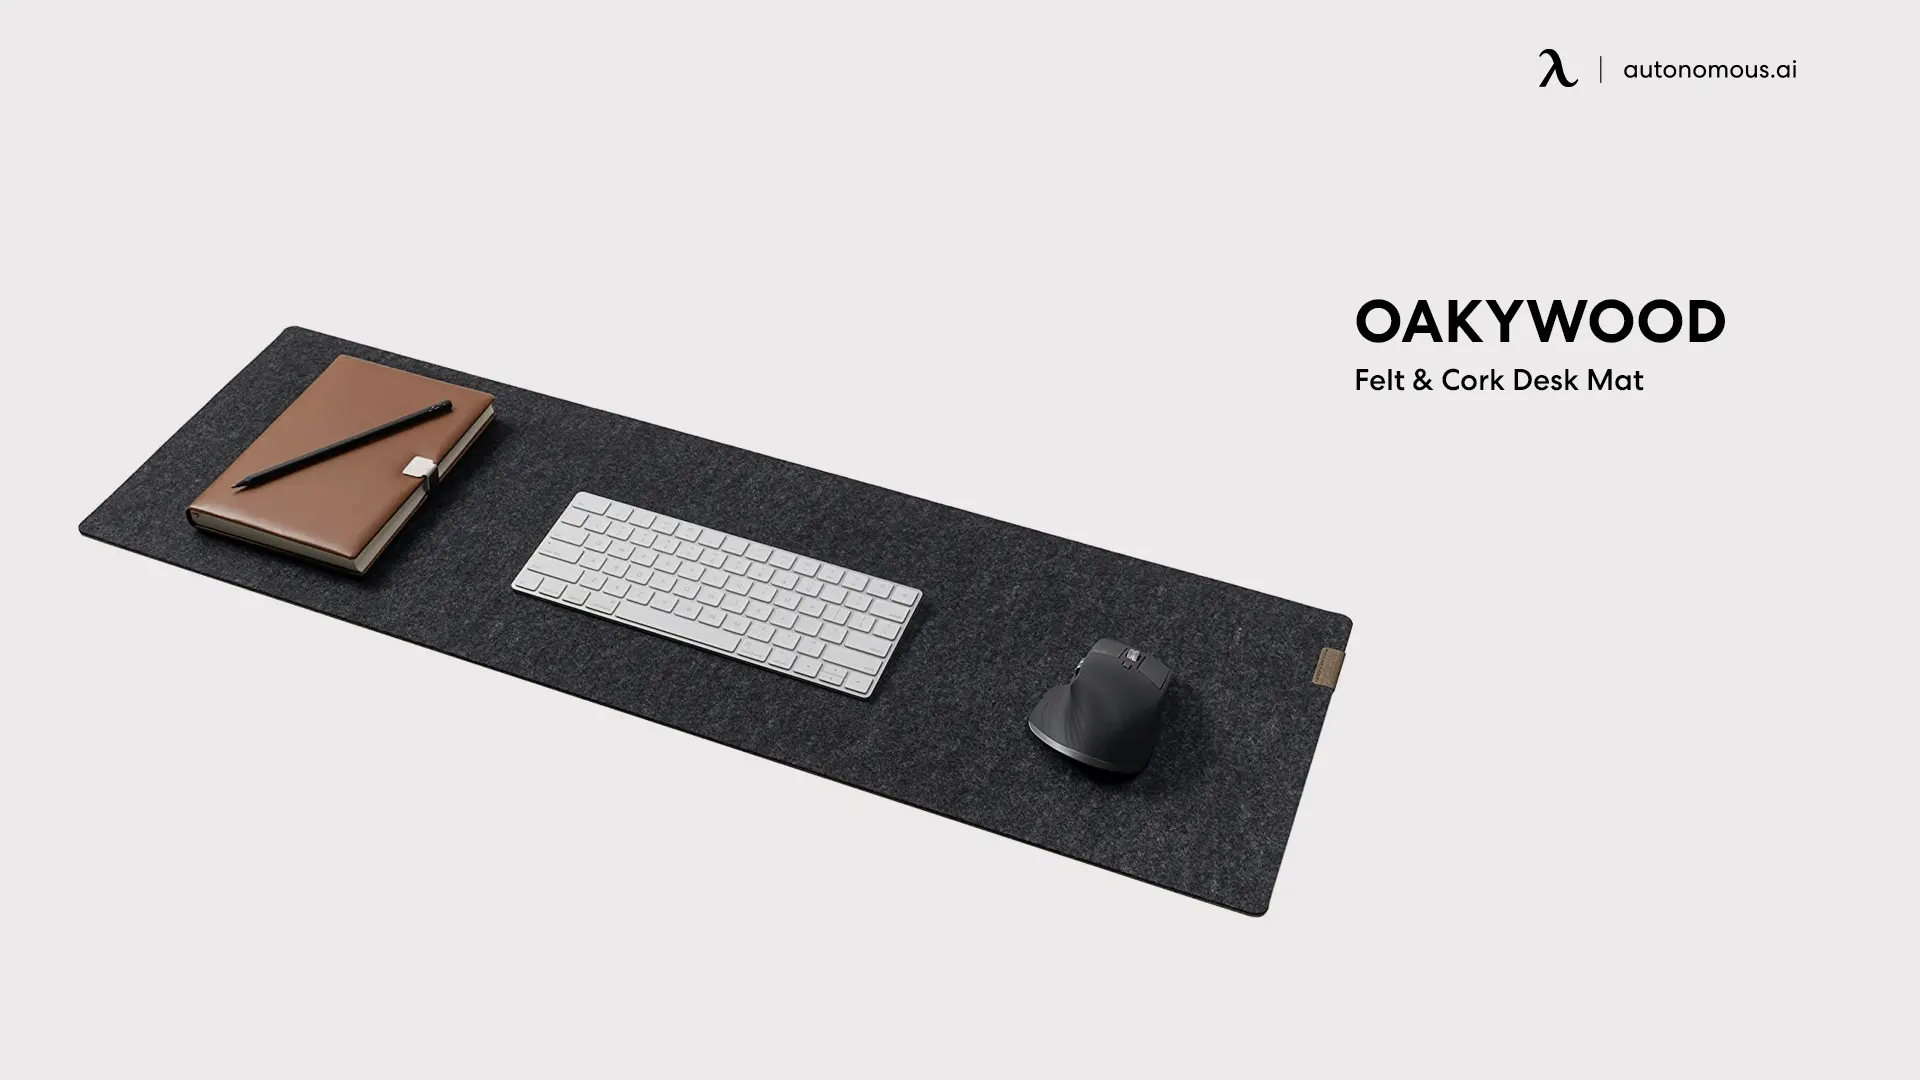 OAKYWOOD Felt & Cork Desk Mat